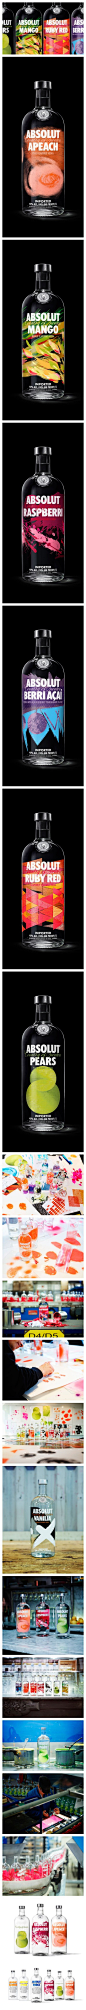 顶级伏特加品牌ABSOLUT VODKA
产自瑞典世界十大名酒之一。享誉国际的顶级烈酒品牌绝对伏特加(ABSOLUT VODKA)于1979年首度引入美国市场，并在26个国家和地区销售，并成为全世界第二大顶级伏特加酒品牌。